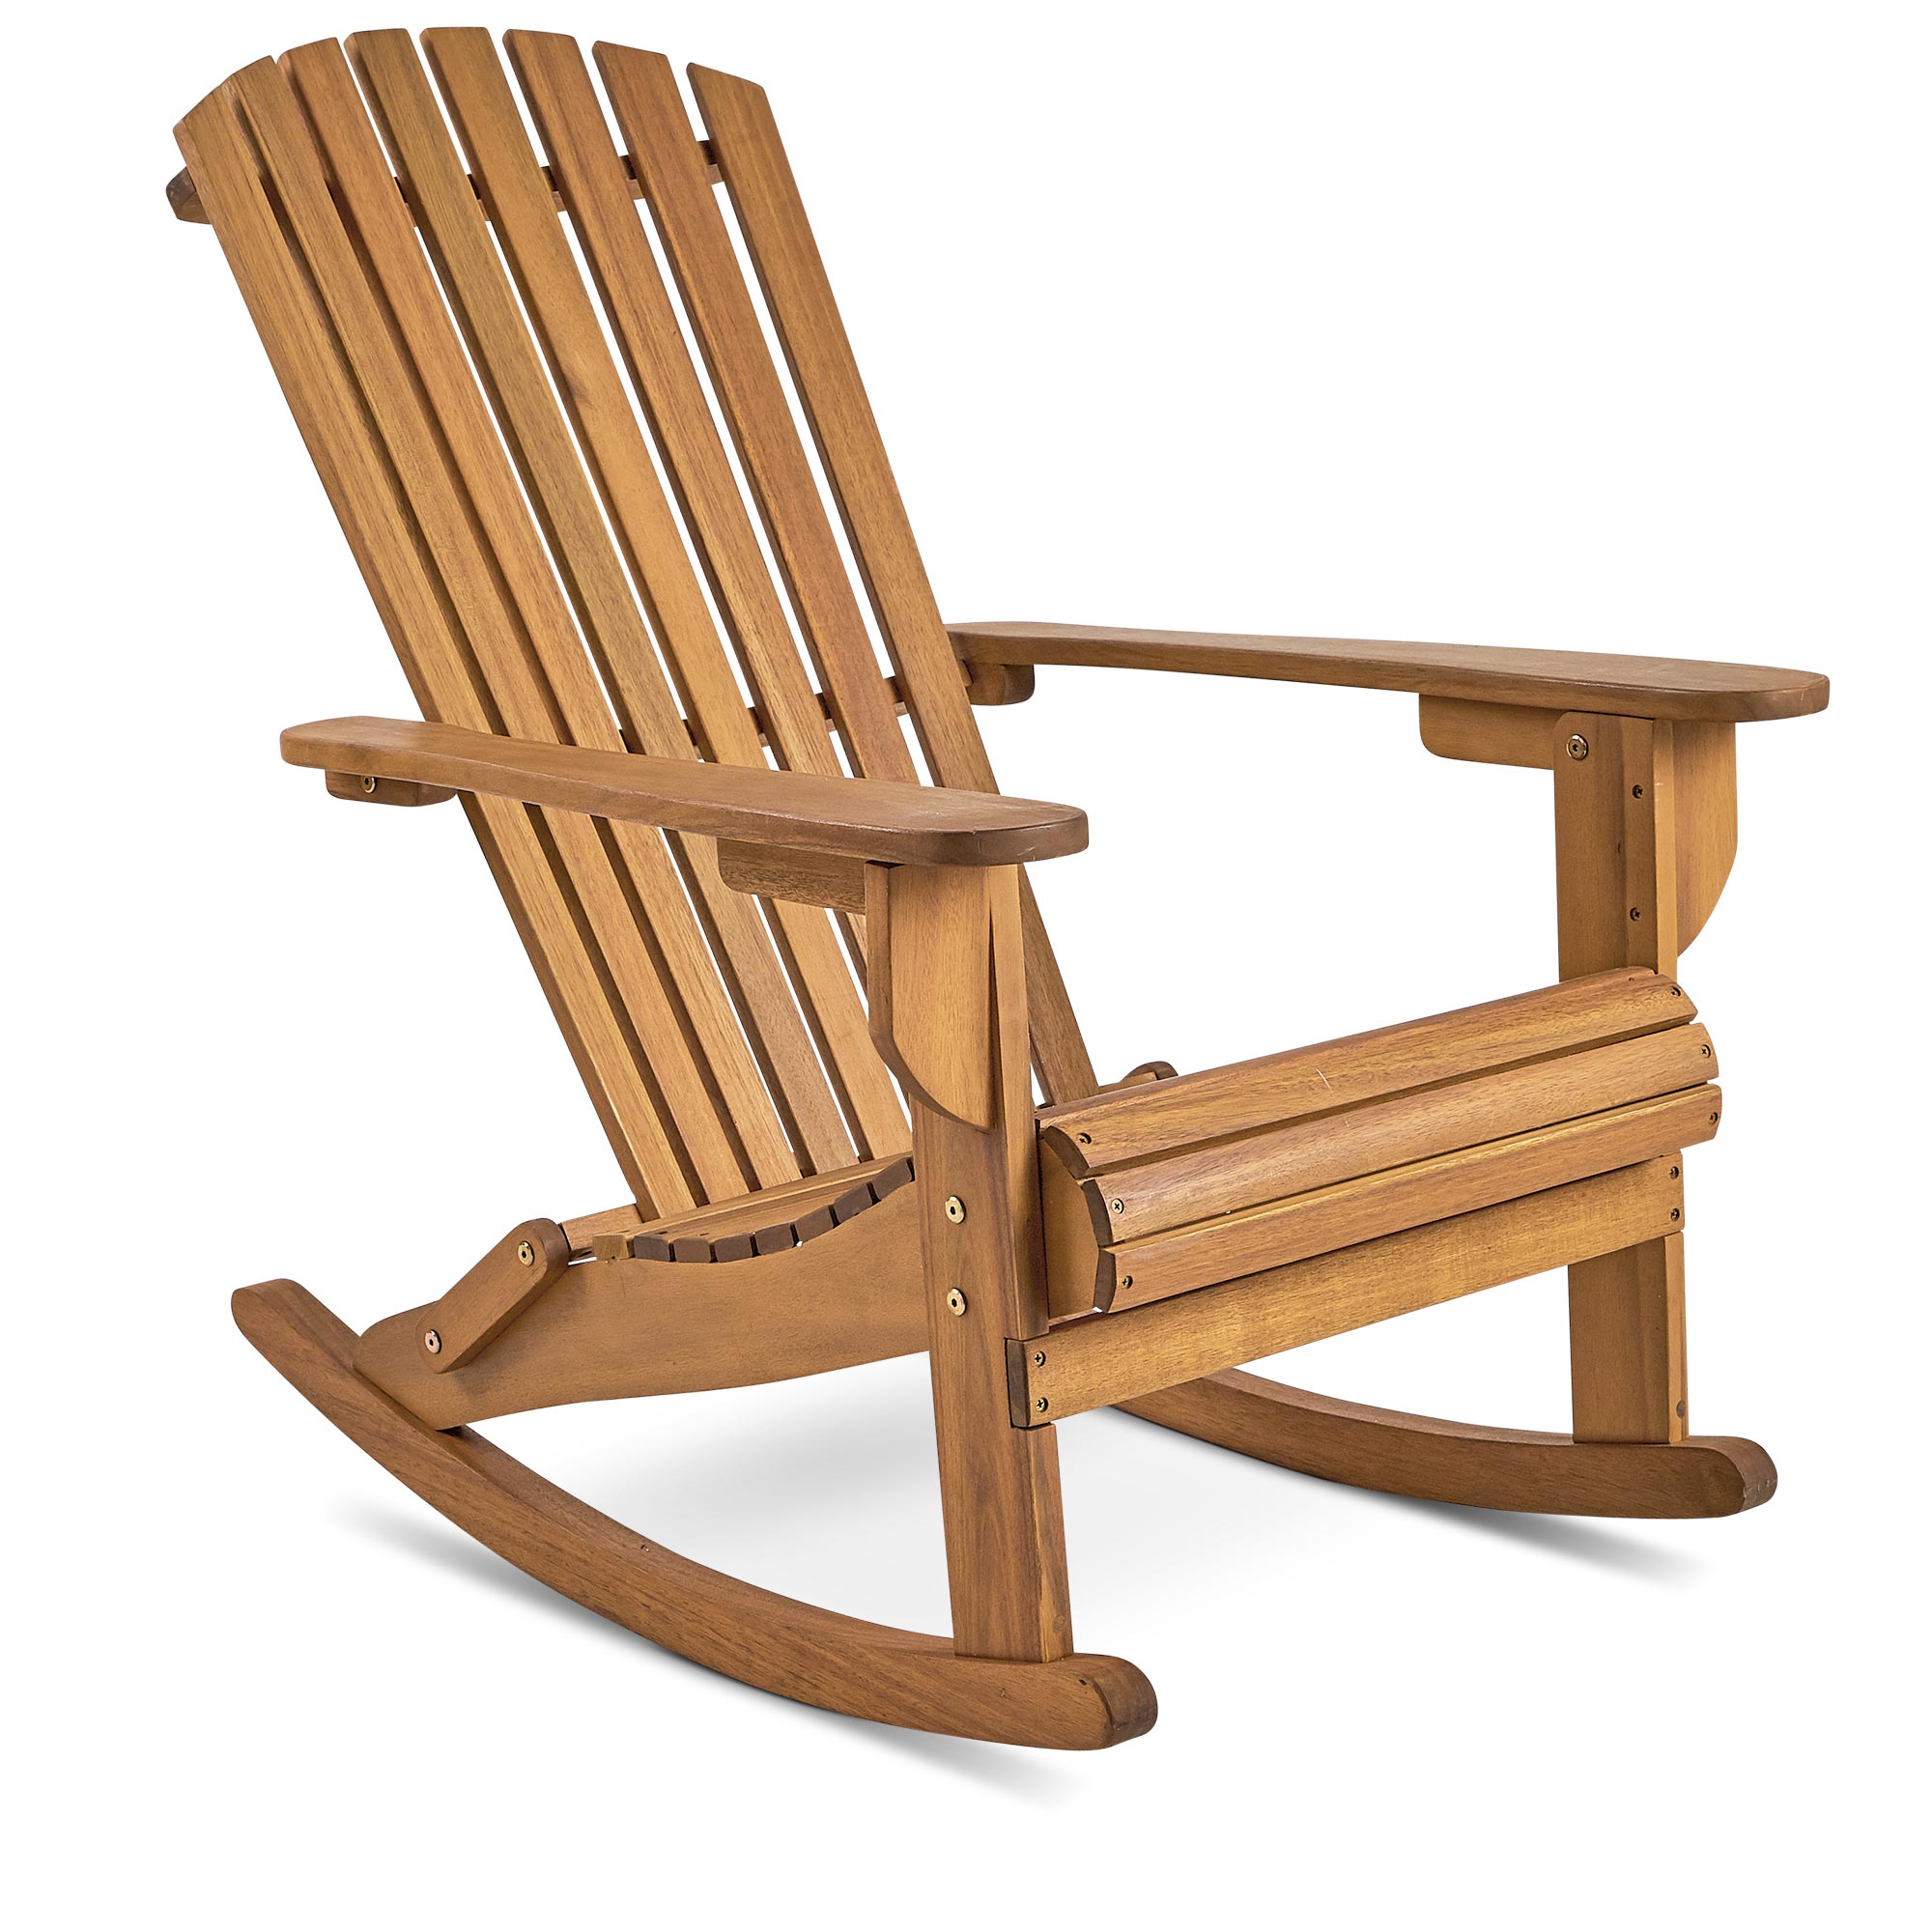 VonHaus Rocking Adirondack Chair Outdoor Garden Patio Balcony Wooden 